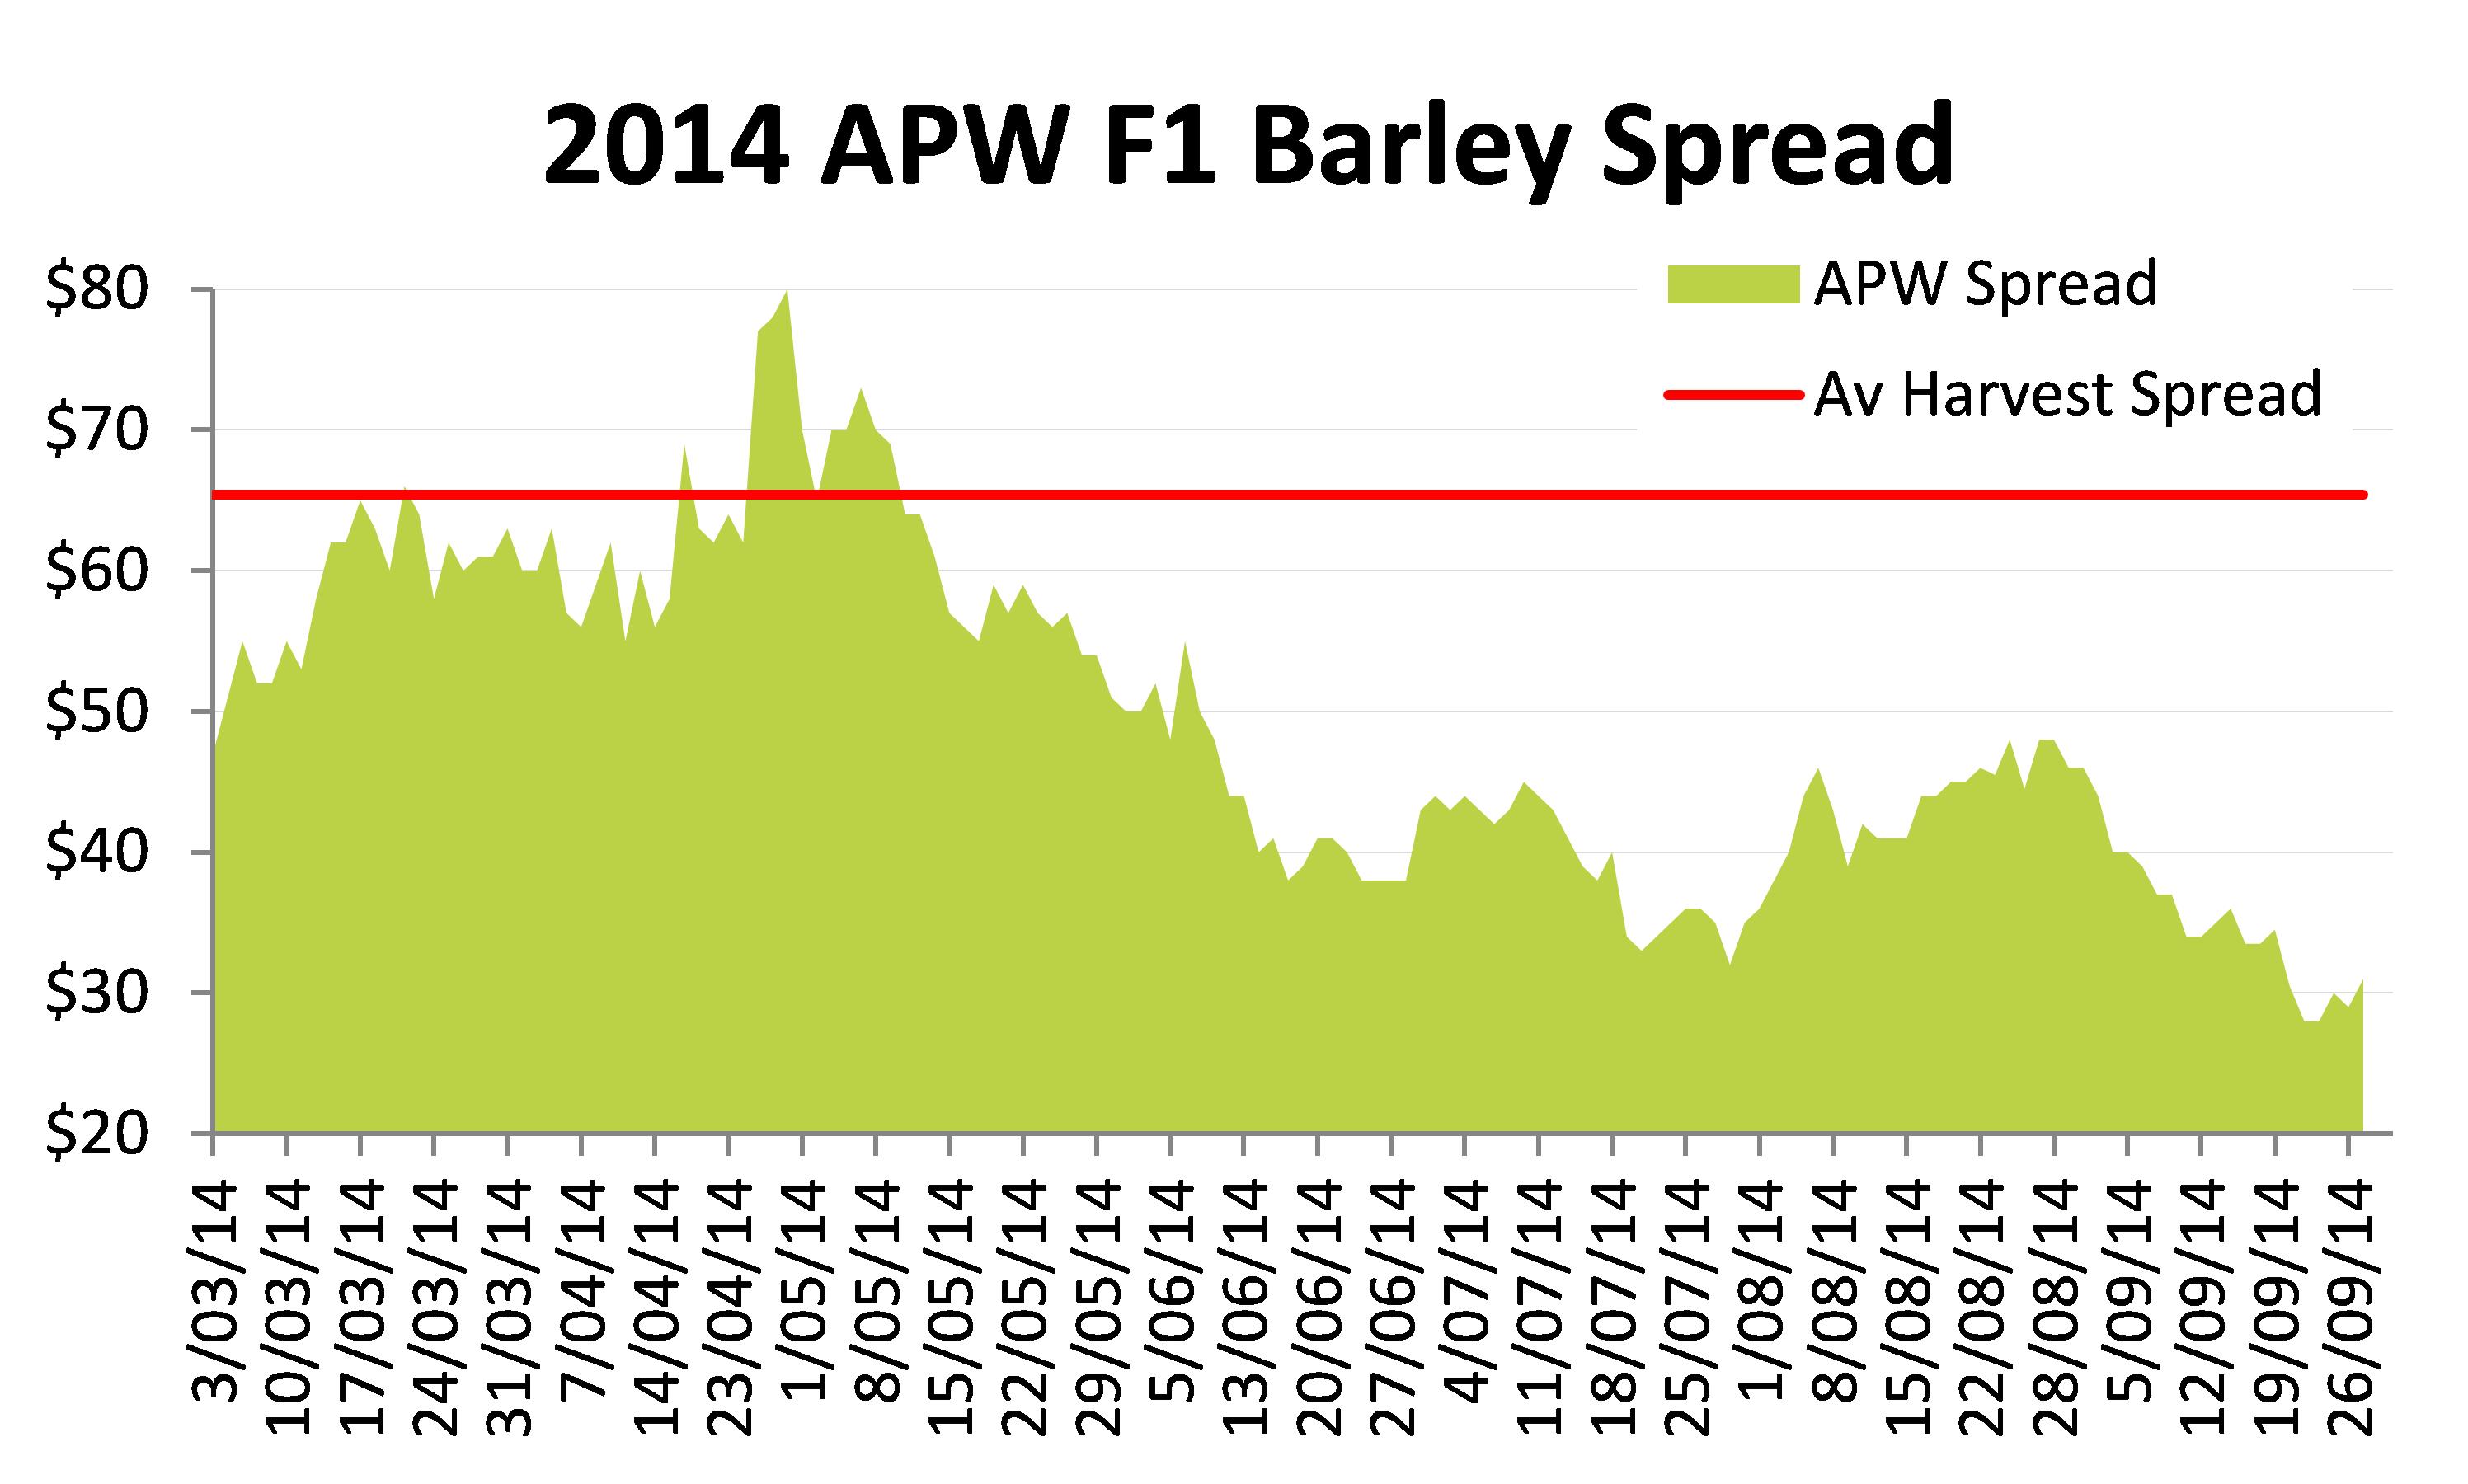 Figure 8. 2014 APW F1 barley spread.